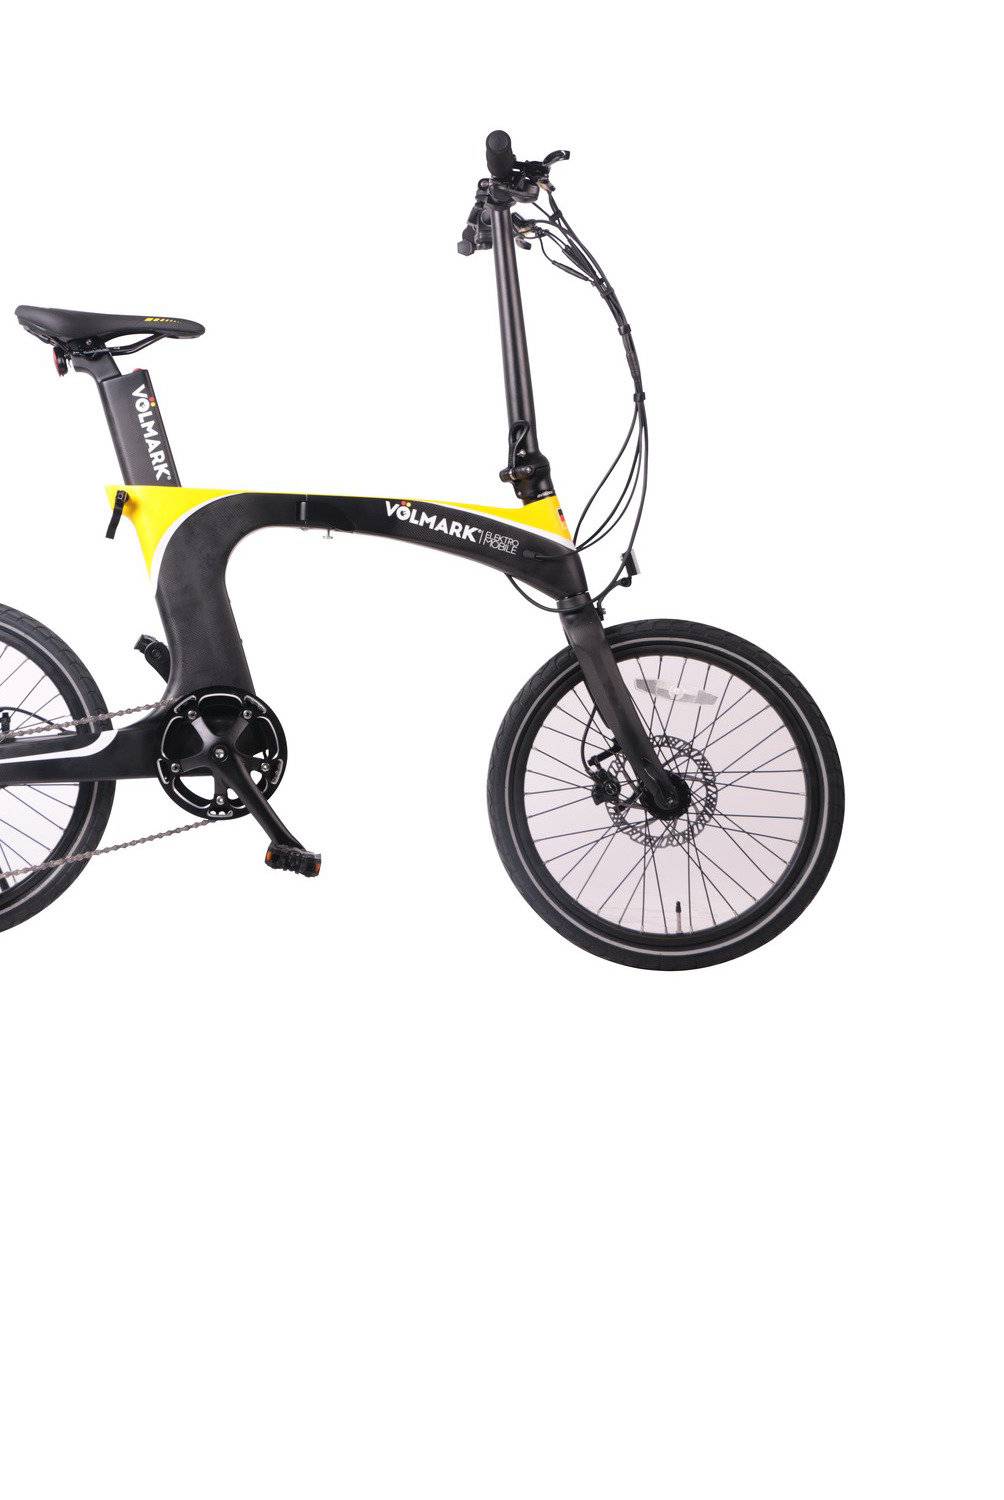 VOLMARK - Bicicleta Eléctrica Plegable Galaxy Amarilla